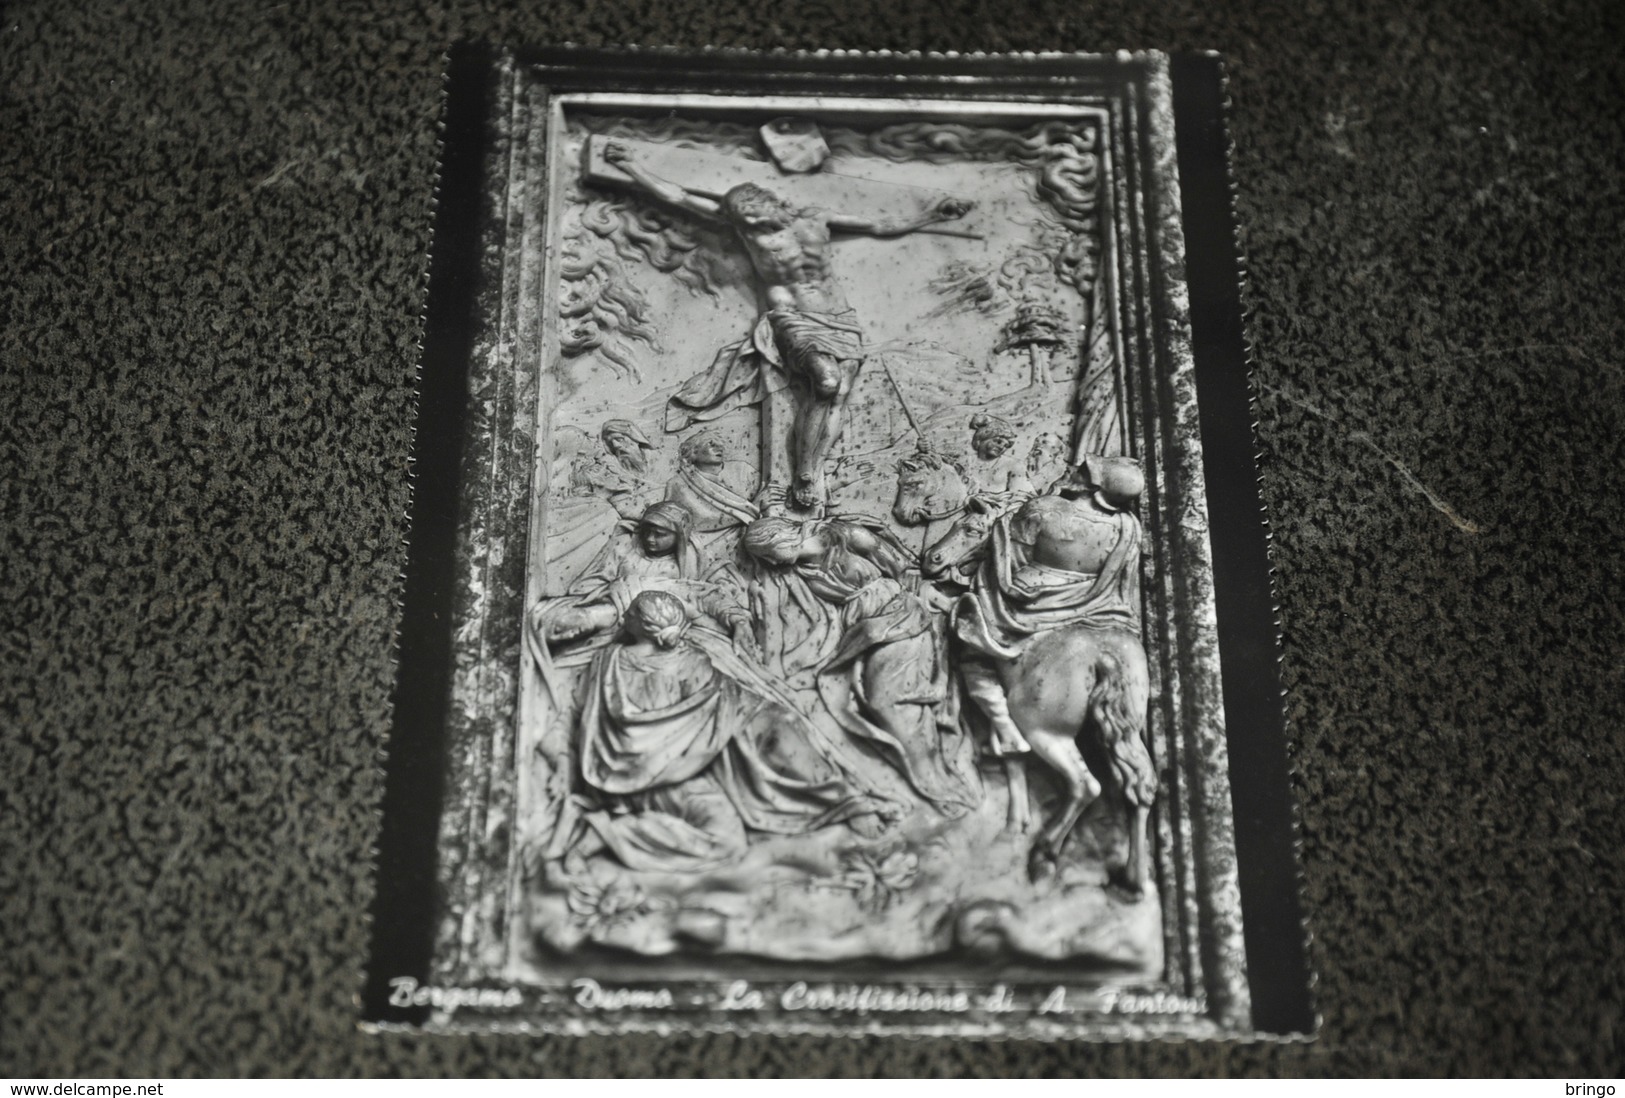 844- Bergamo, Duomo, La Crocifissione Di A. Fantoni - Chiese E Conventi